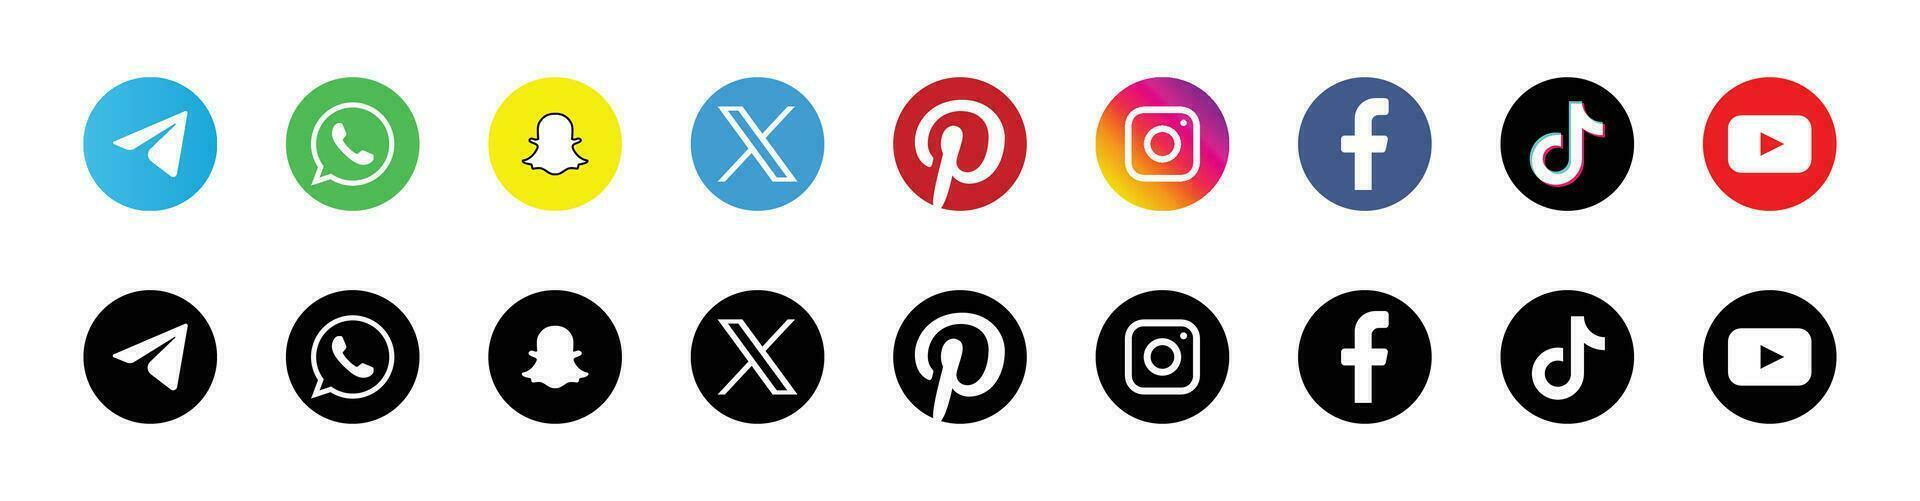 mayor social medios de comunicación marca logos - íconos para Facebook, instagram, gorjeo, Youtube vector